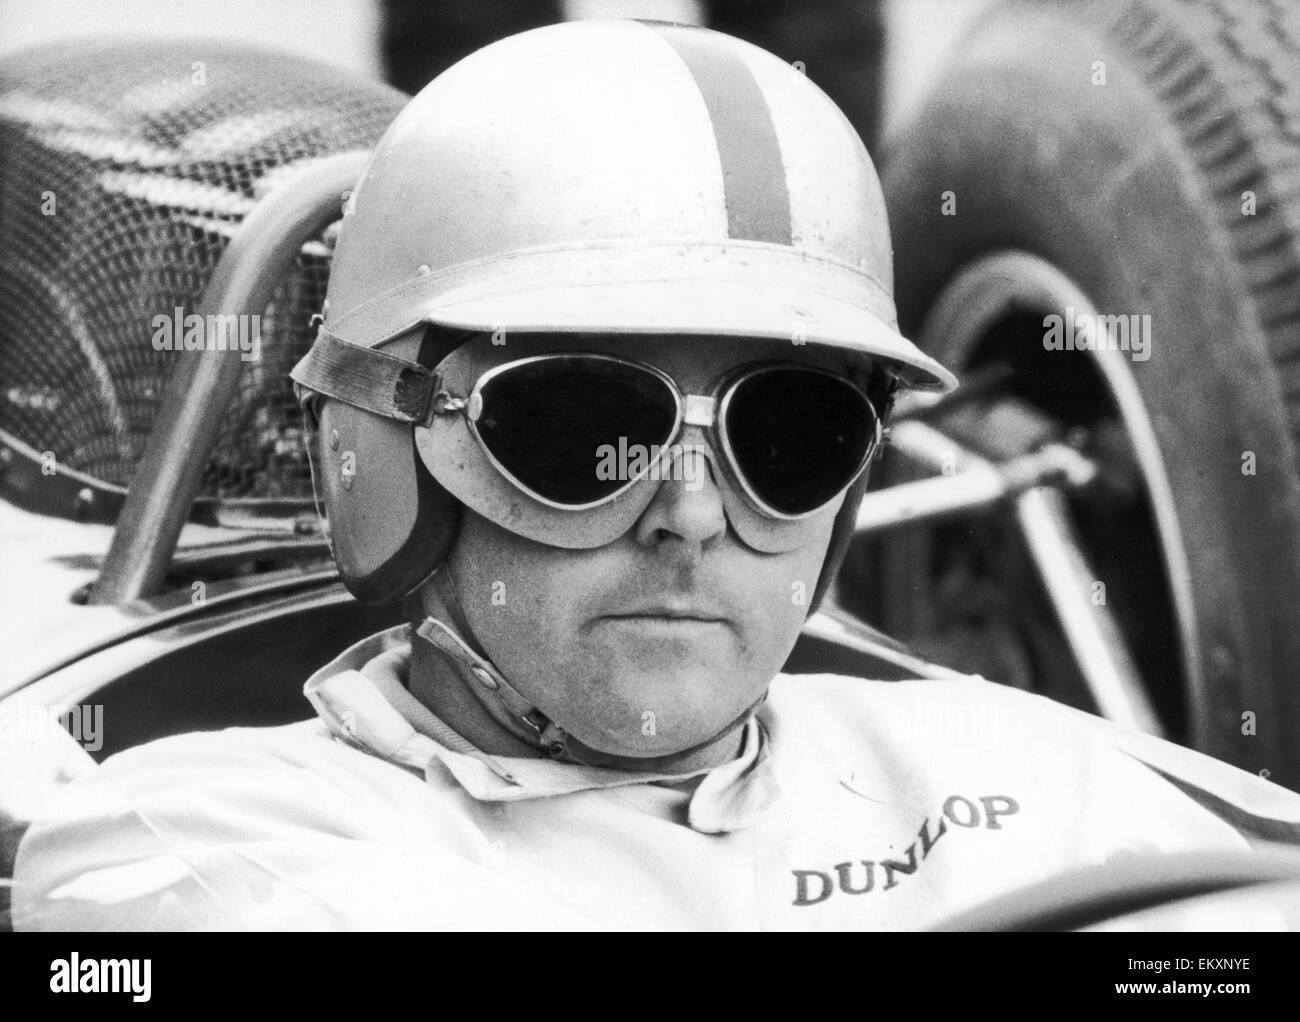 car racing sunglasses